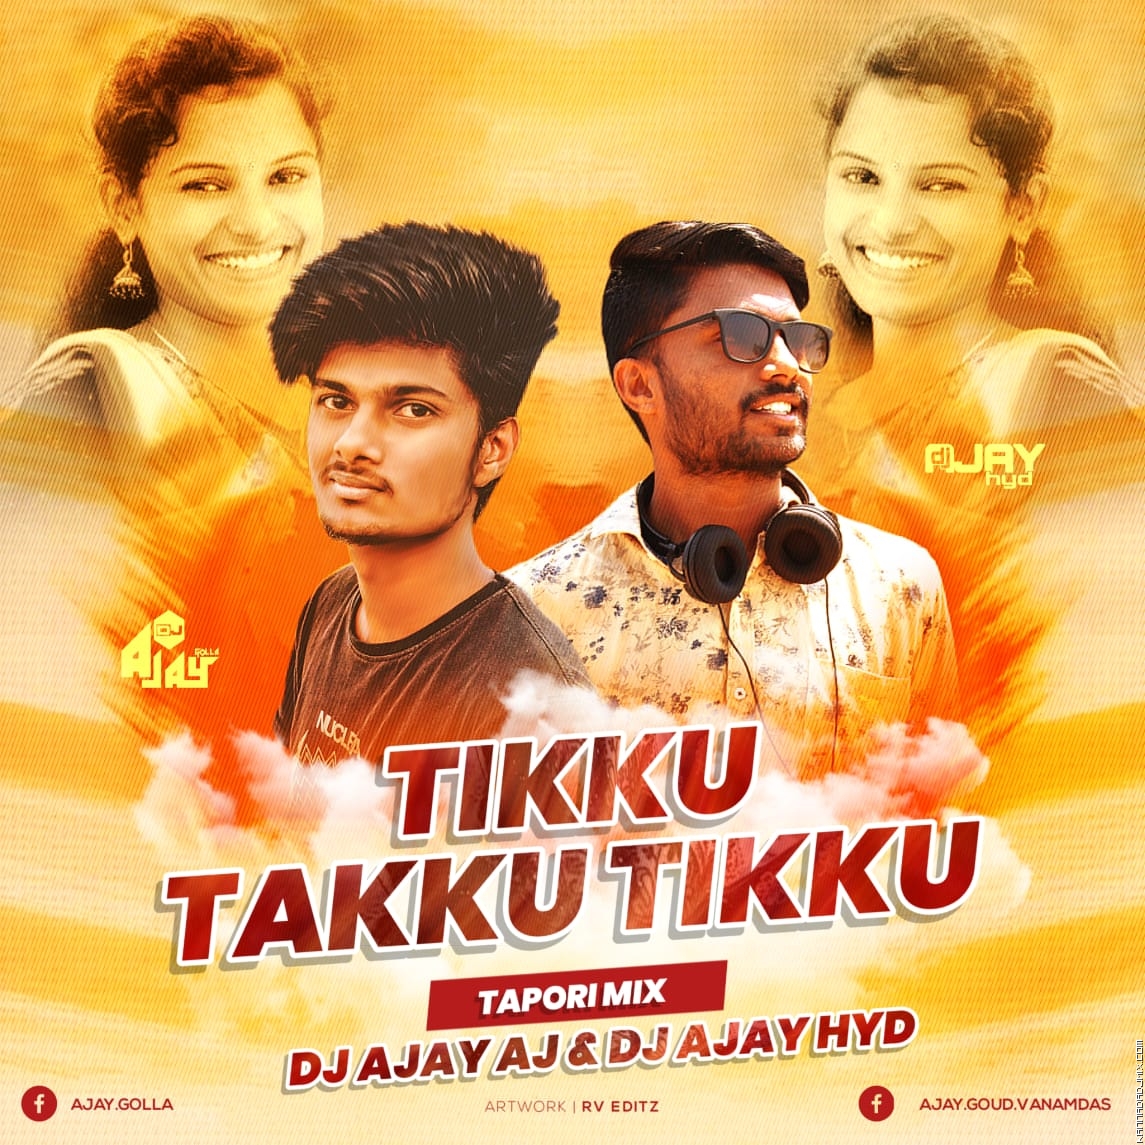 Tikku Takku Tikku Tapori Mix Dj AjayAj Dj Ajay Hyd.mp3